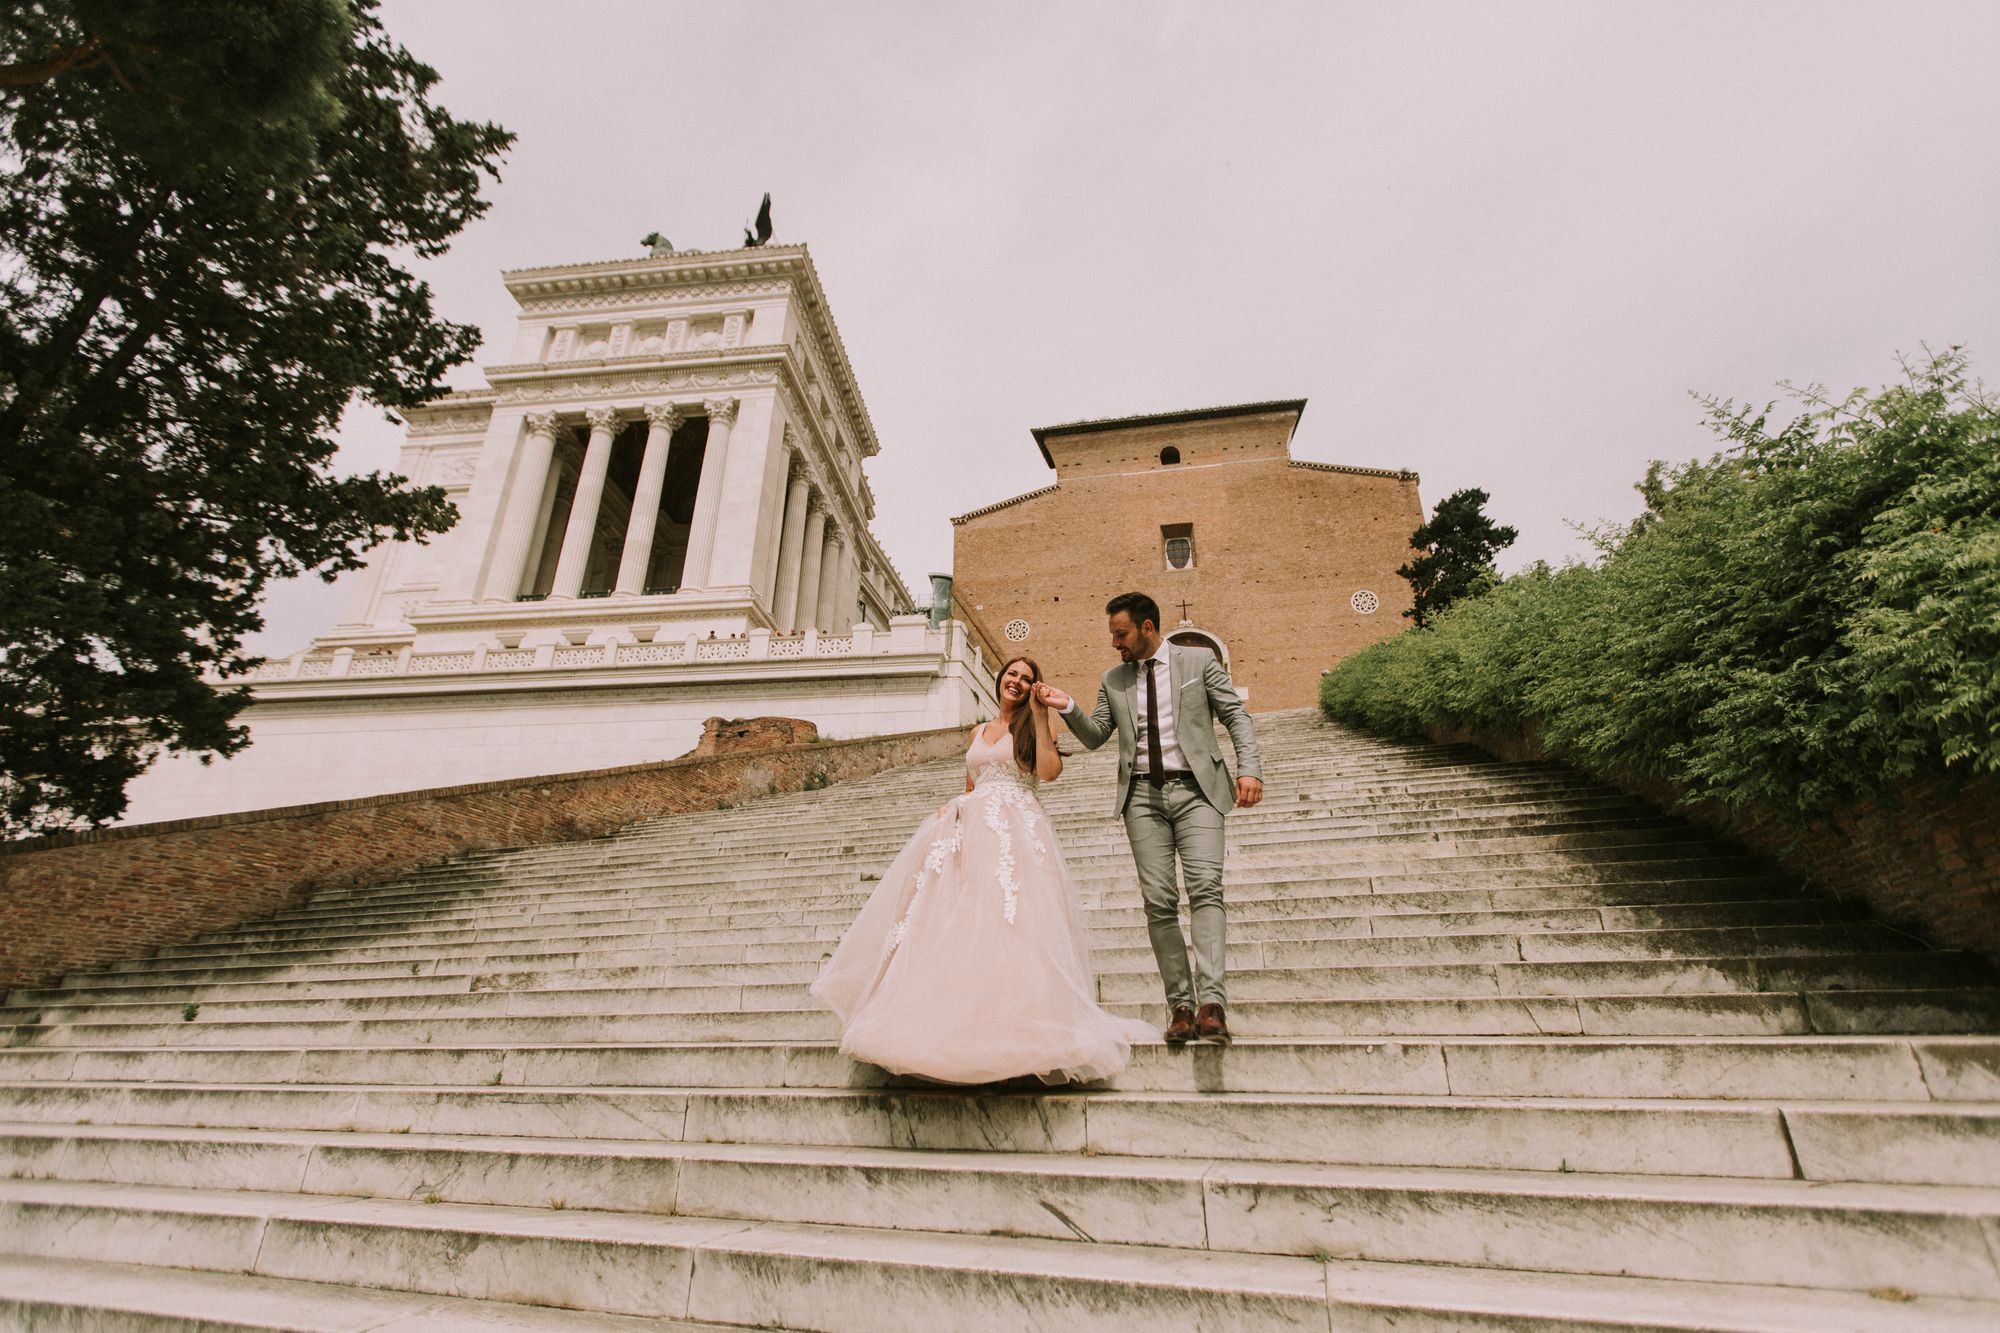 Eine Braut und ein Bräutigam gehen die Stufen eines Gebäudes hinunter.